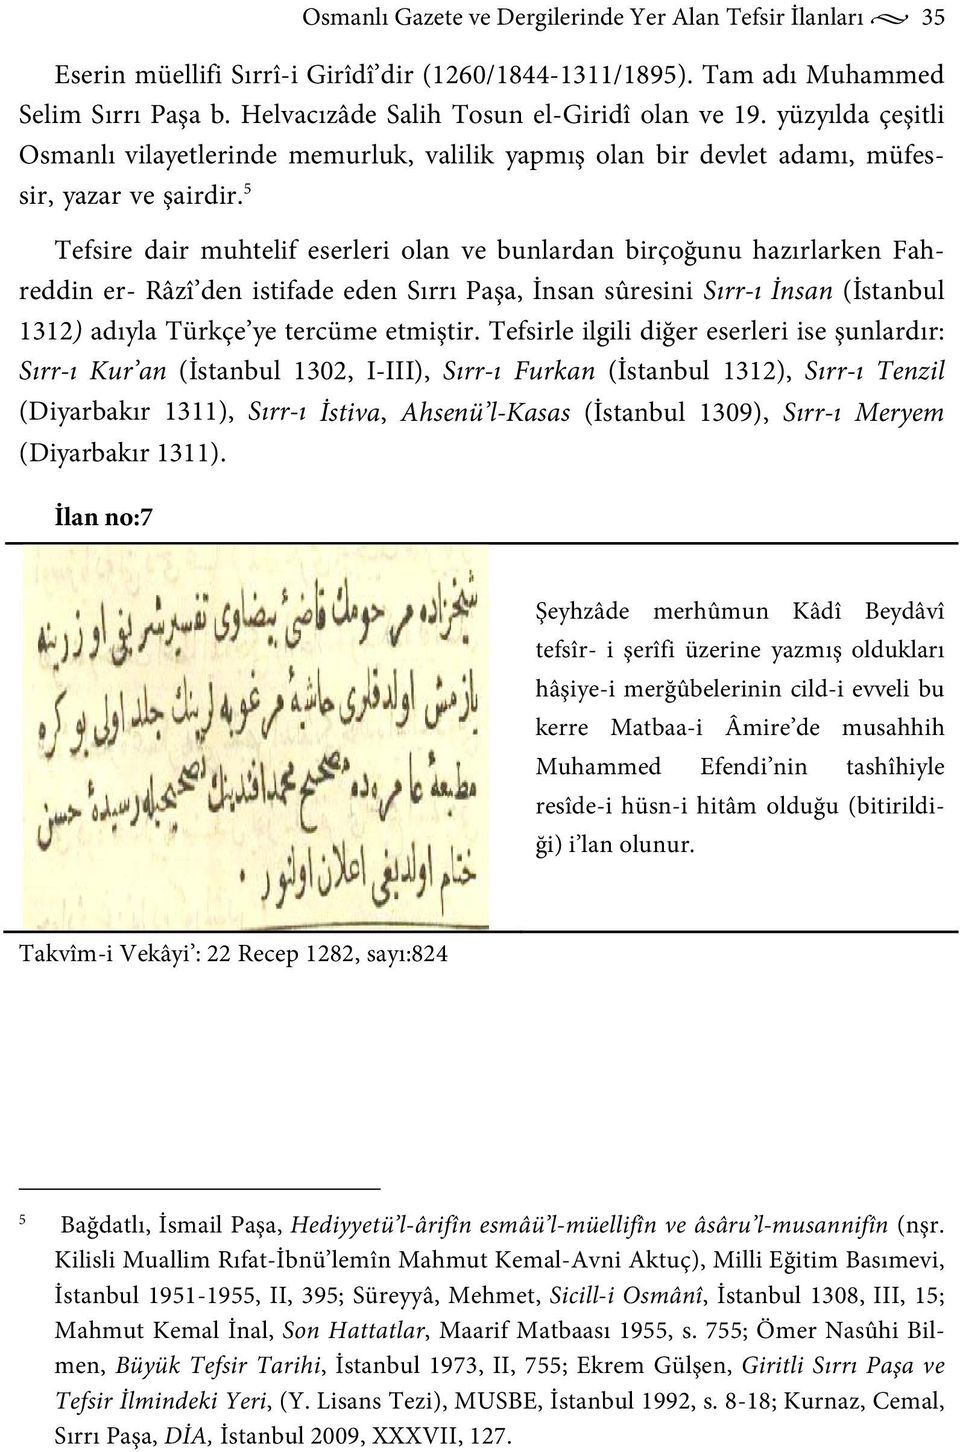 5 Tefsire dair muhtelif eserleri olan ve bunlardan birçoğunu hazırlarken Fahreddin er- Râzî den istifade eden Sırrı Paşa, İnsan sûresini Sırr-ı İnsan (İstanbul 1312) adıyla Türkçe ye tercüme etmiştir.